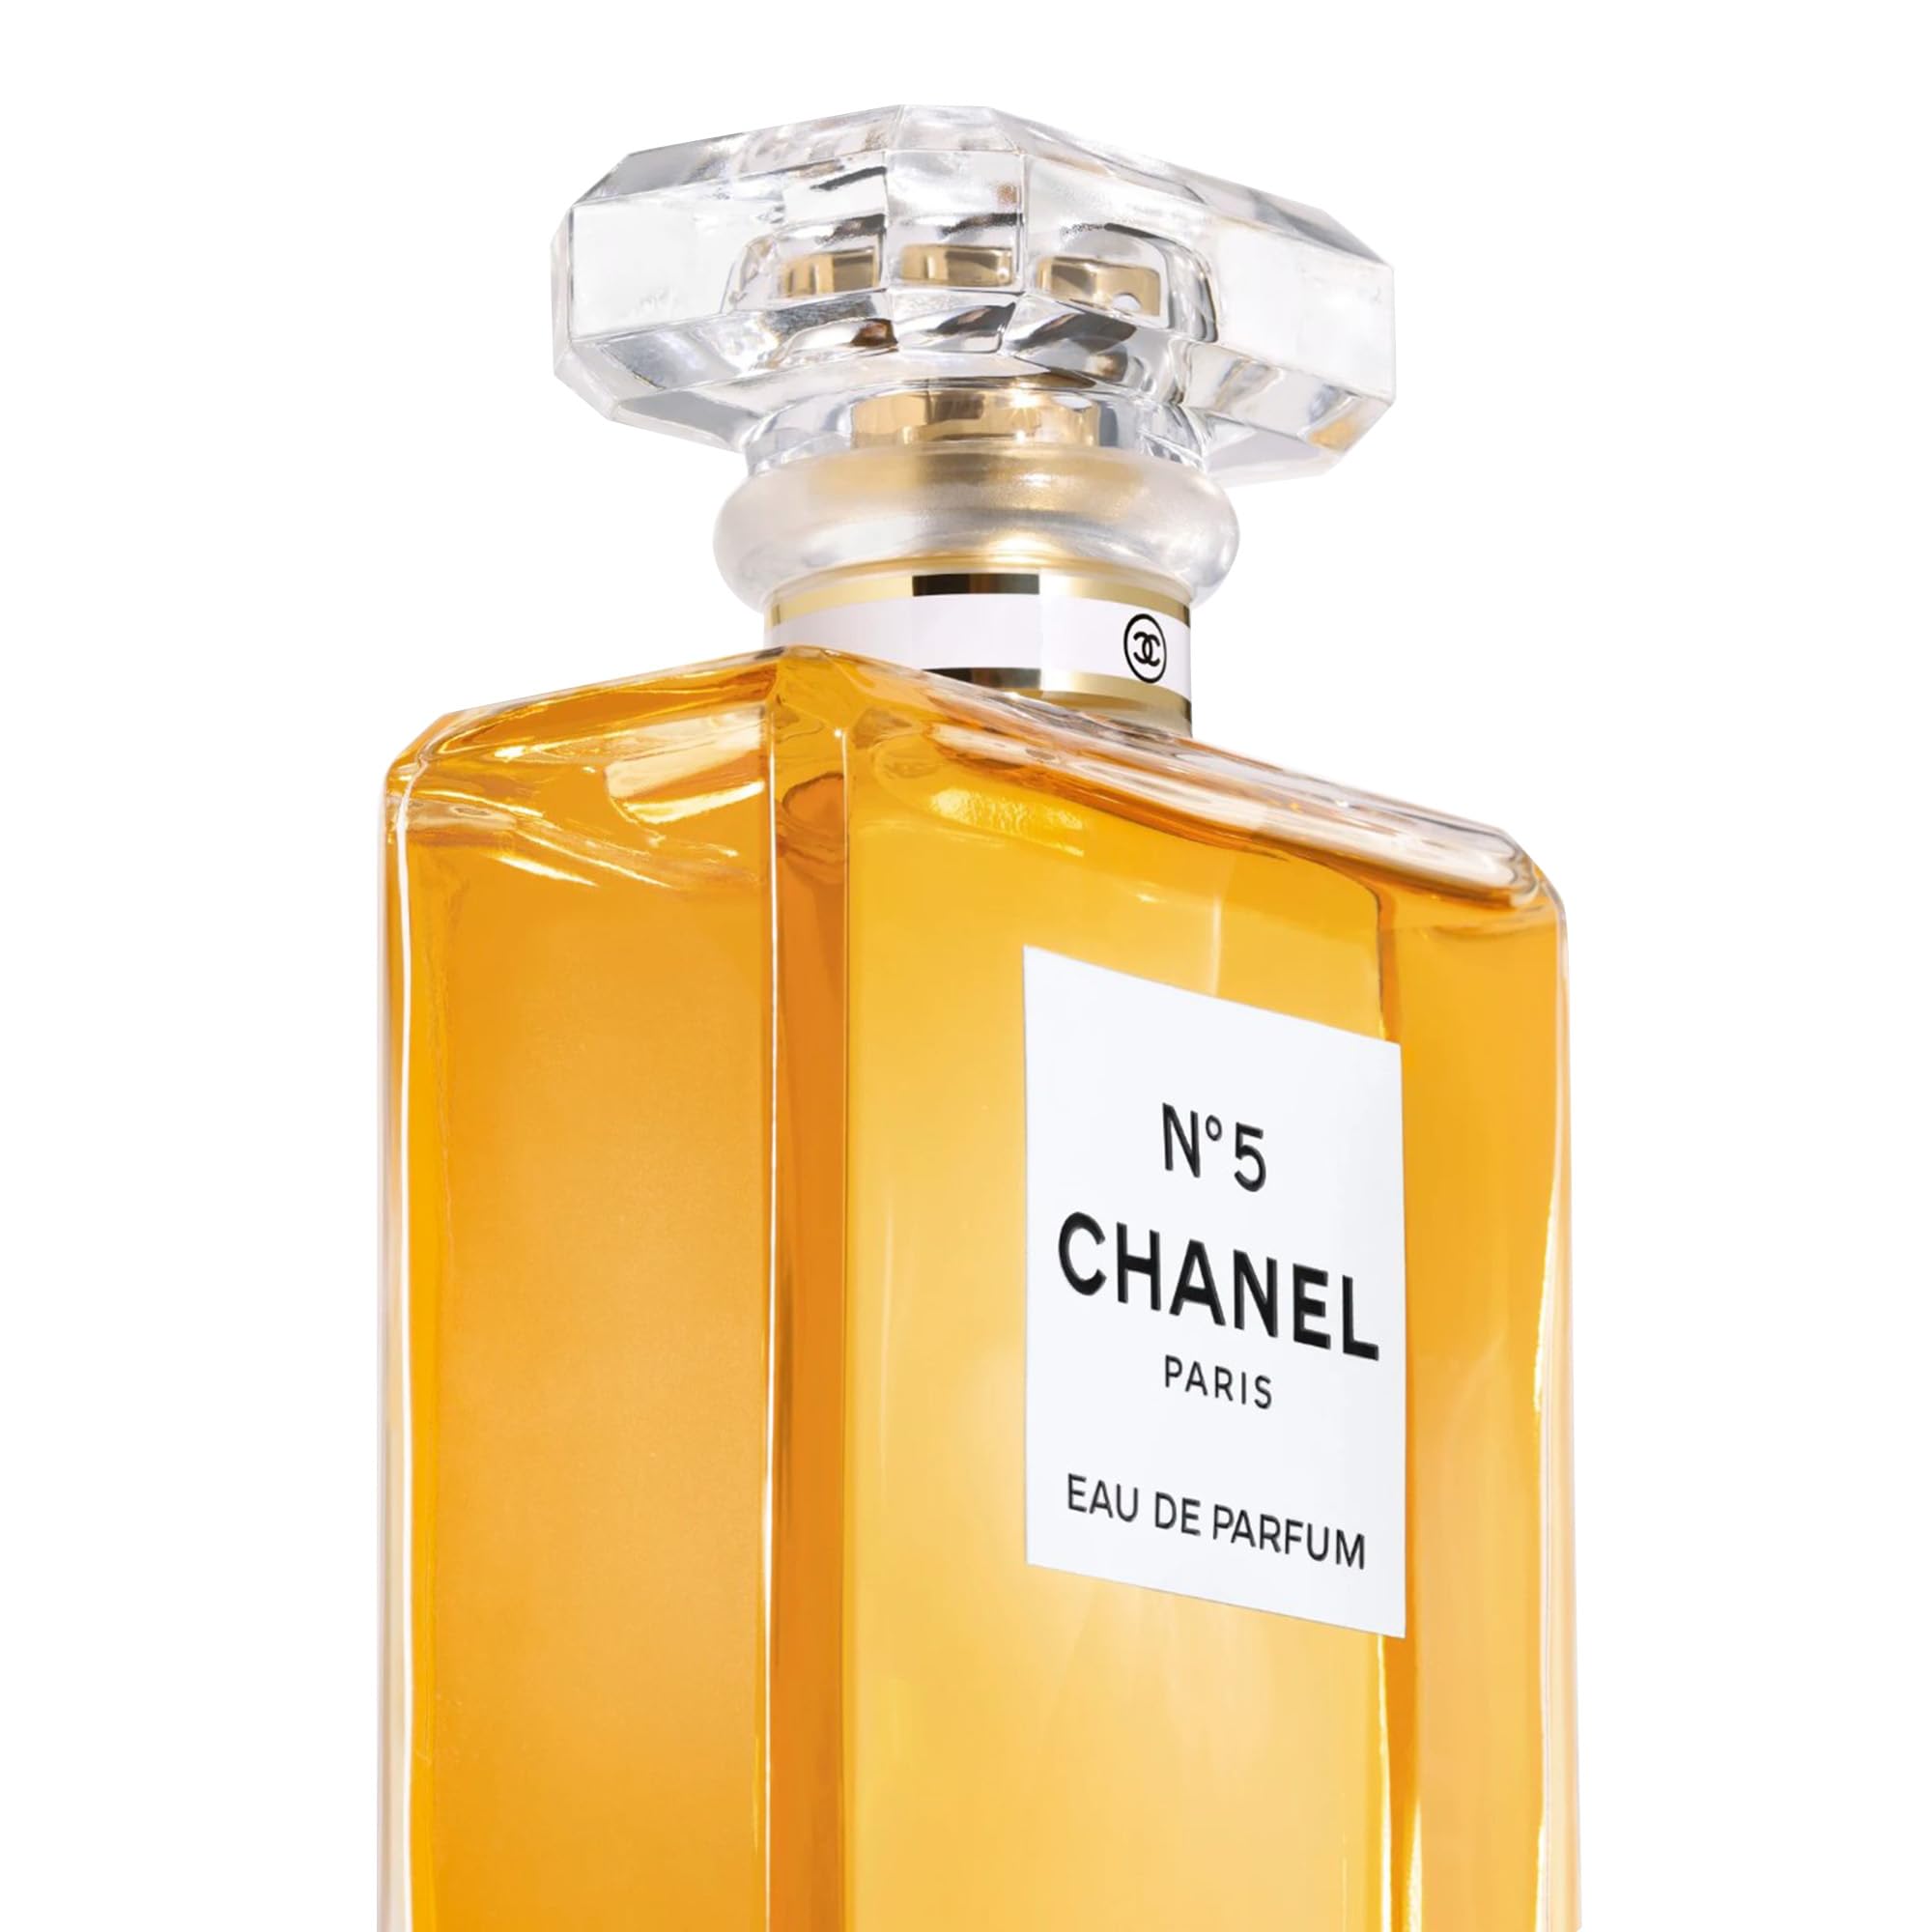 Chanel No5 Eau De Parfum Spray buy to Taiwan CosmoStore Taiwan